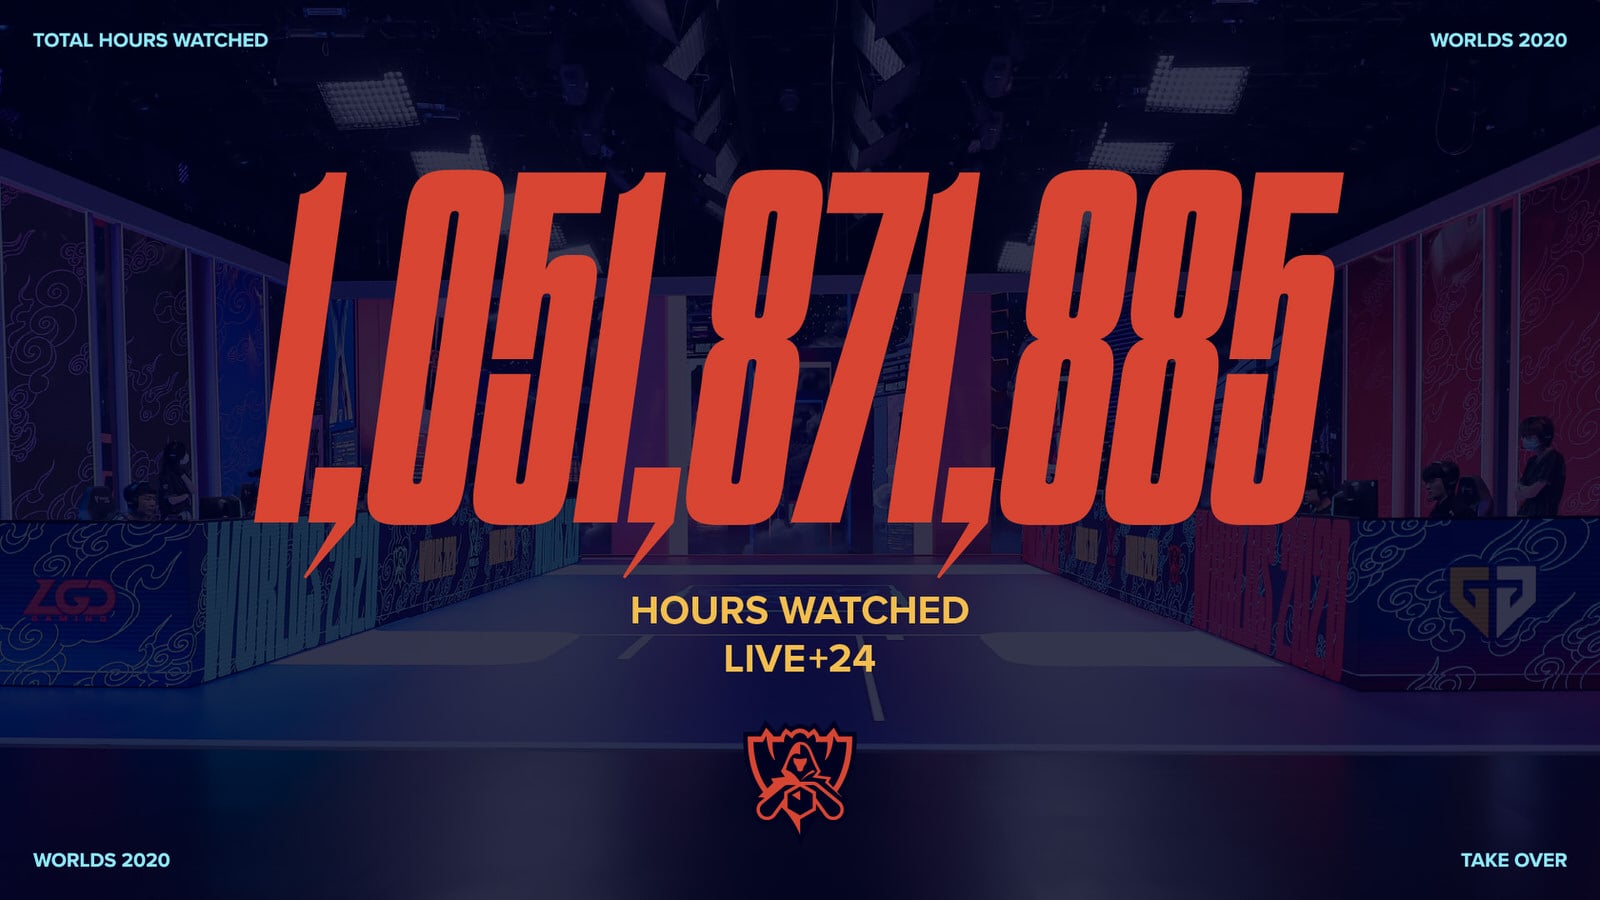 Worlds 2020 1 Billion Watch Hours